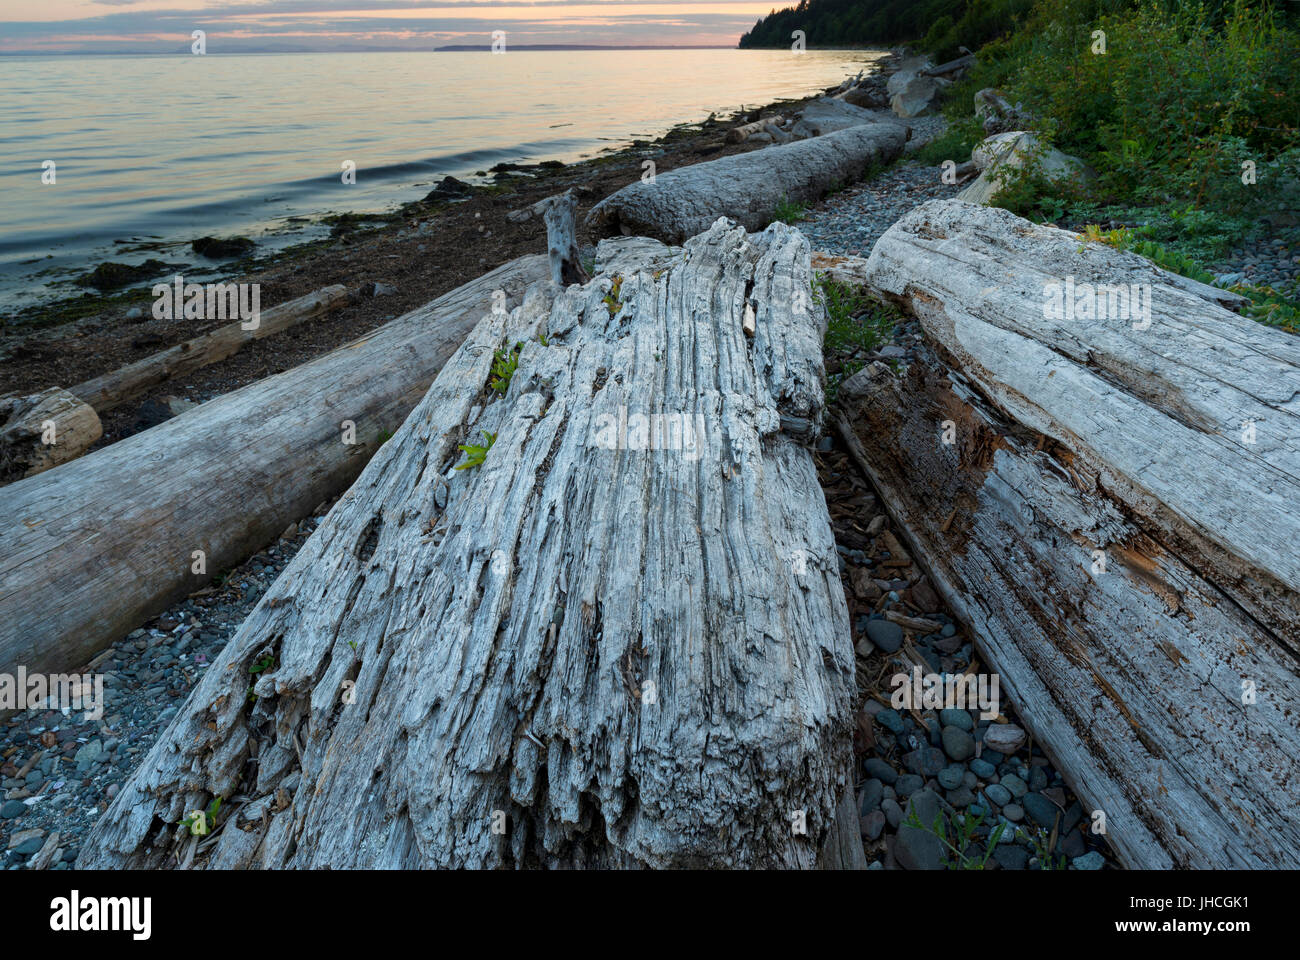 Paesaggi e paesaggi marini del Pacifico Nord Ovest della Columbia britannica in Canada. Foto Stock